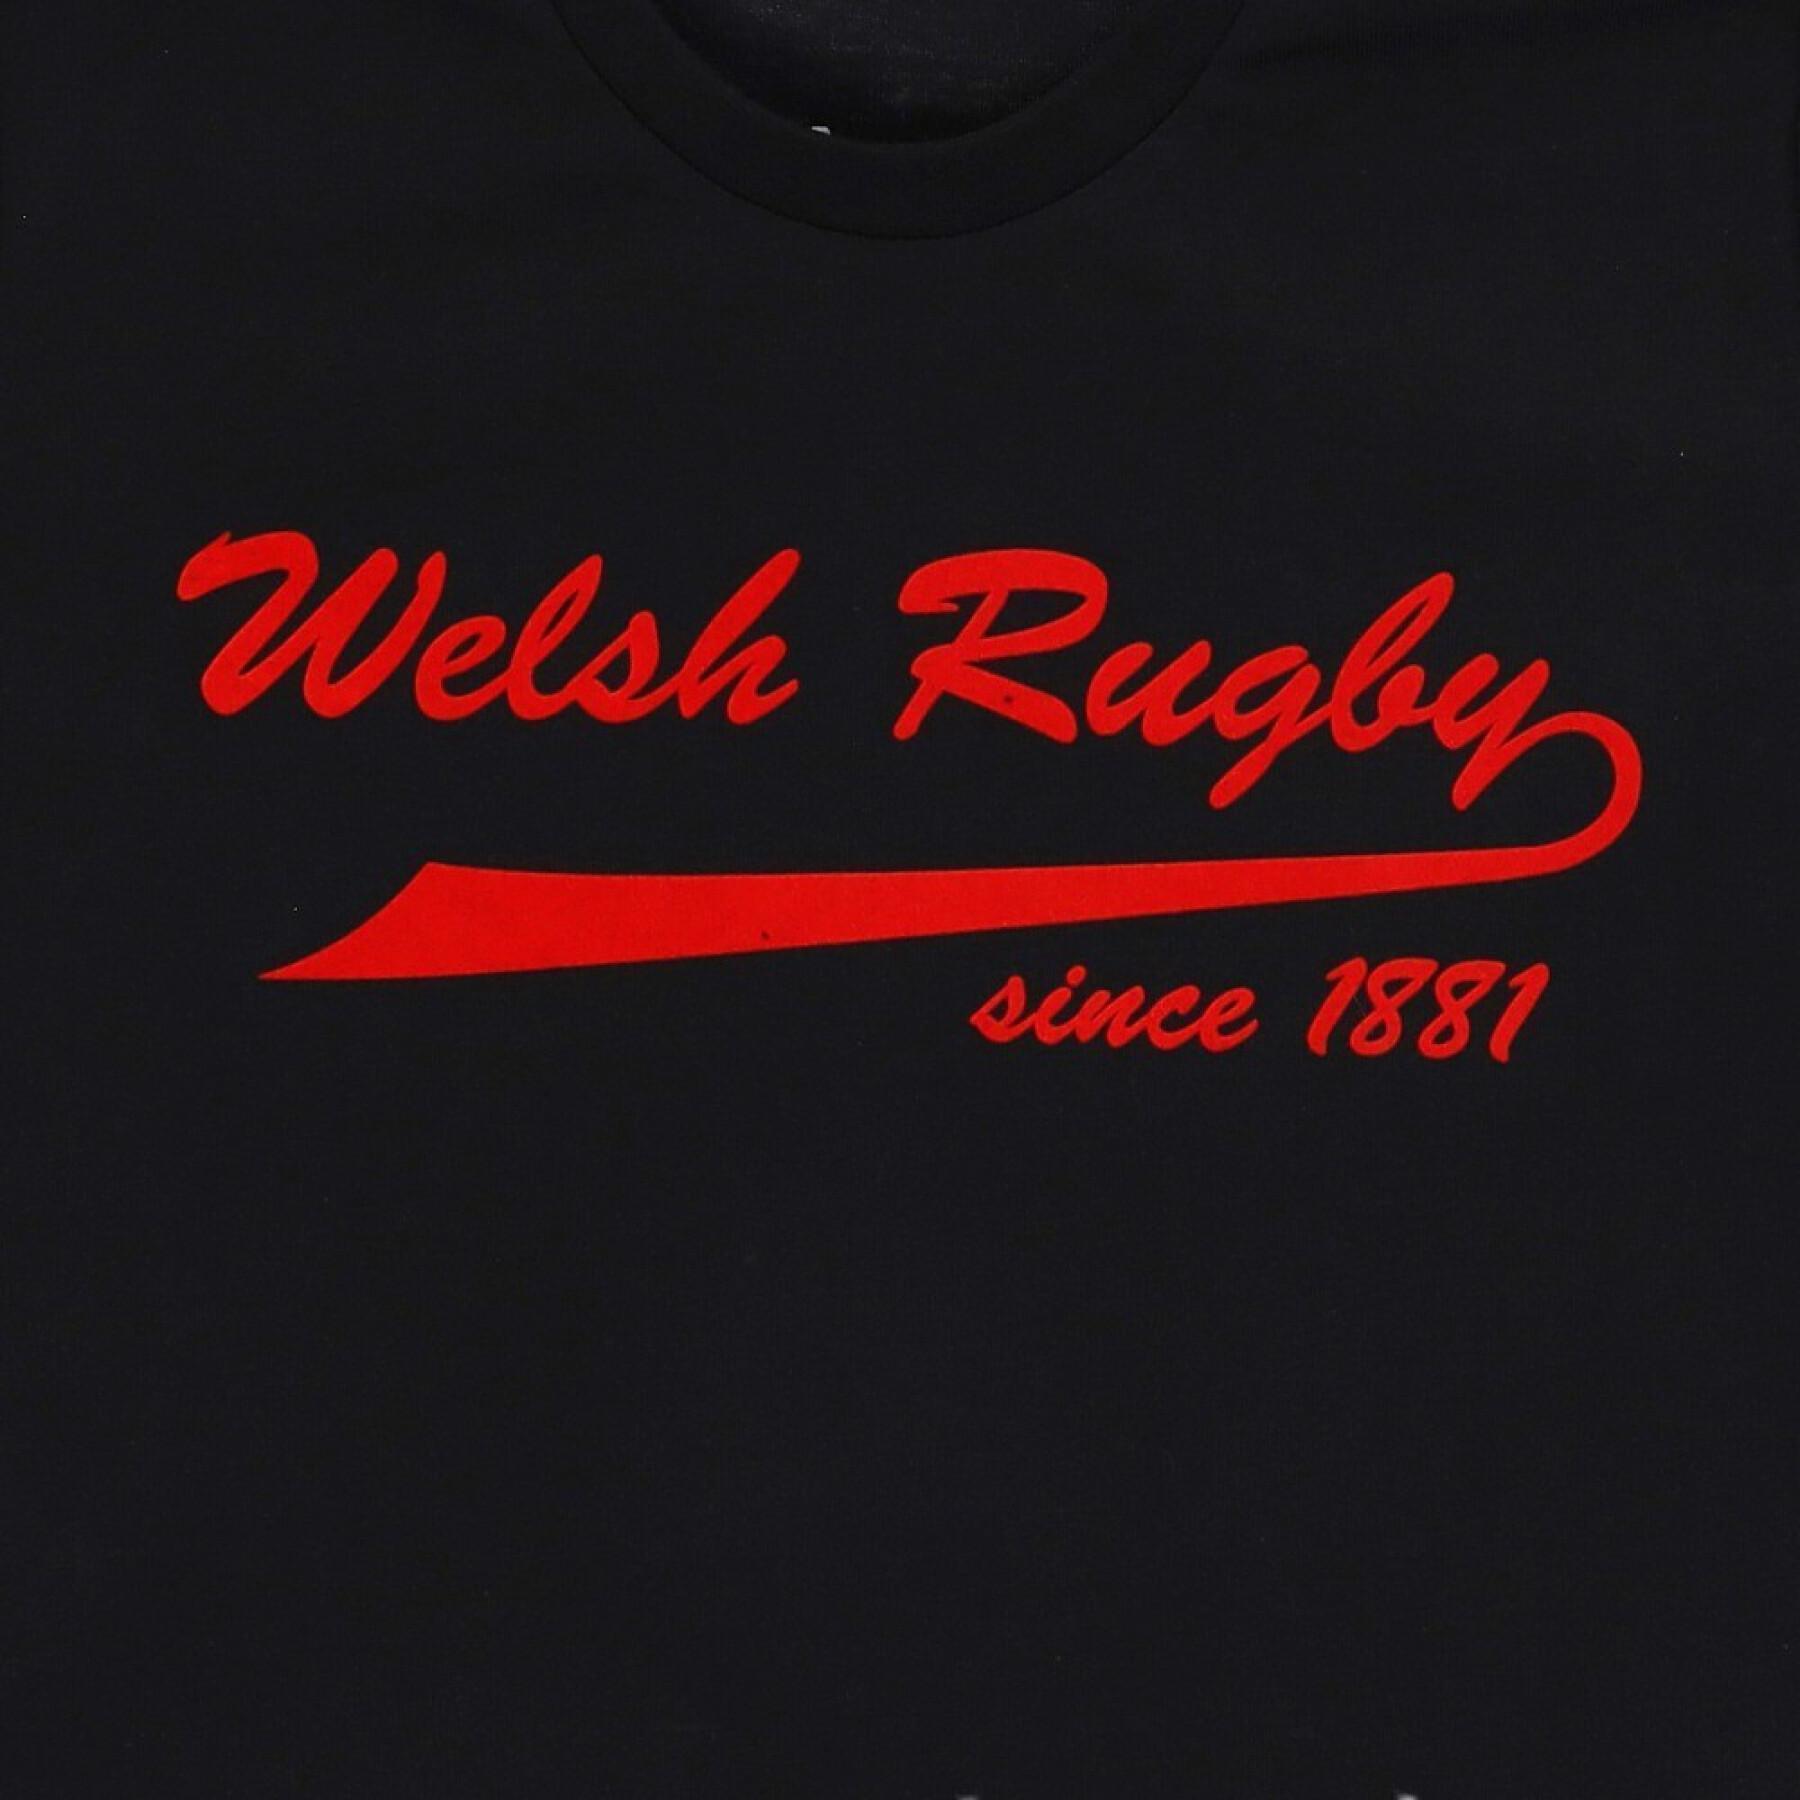 T-shirt enfant imprimé Pays de Galles Rugby XV 2020/21